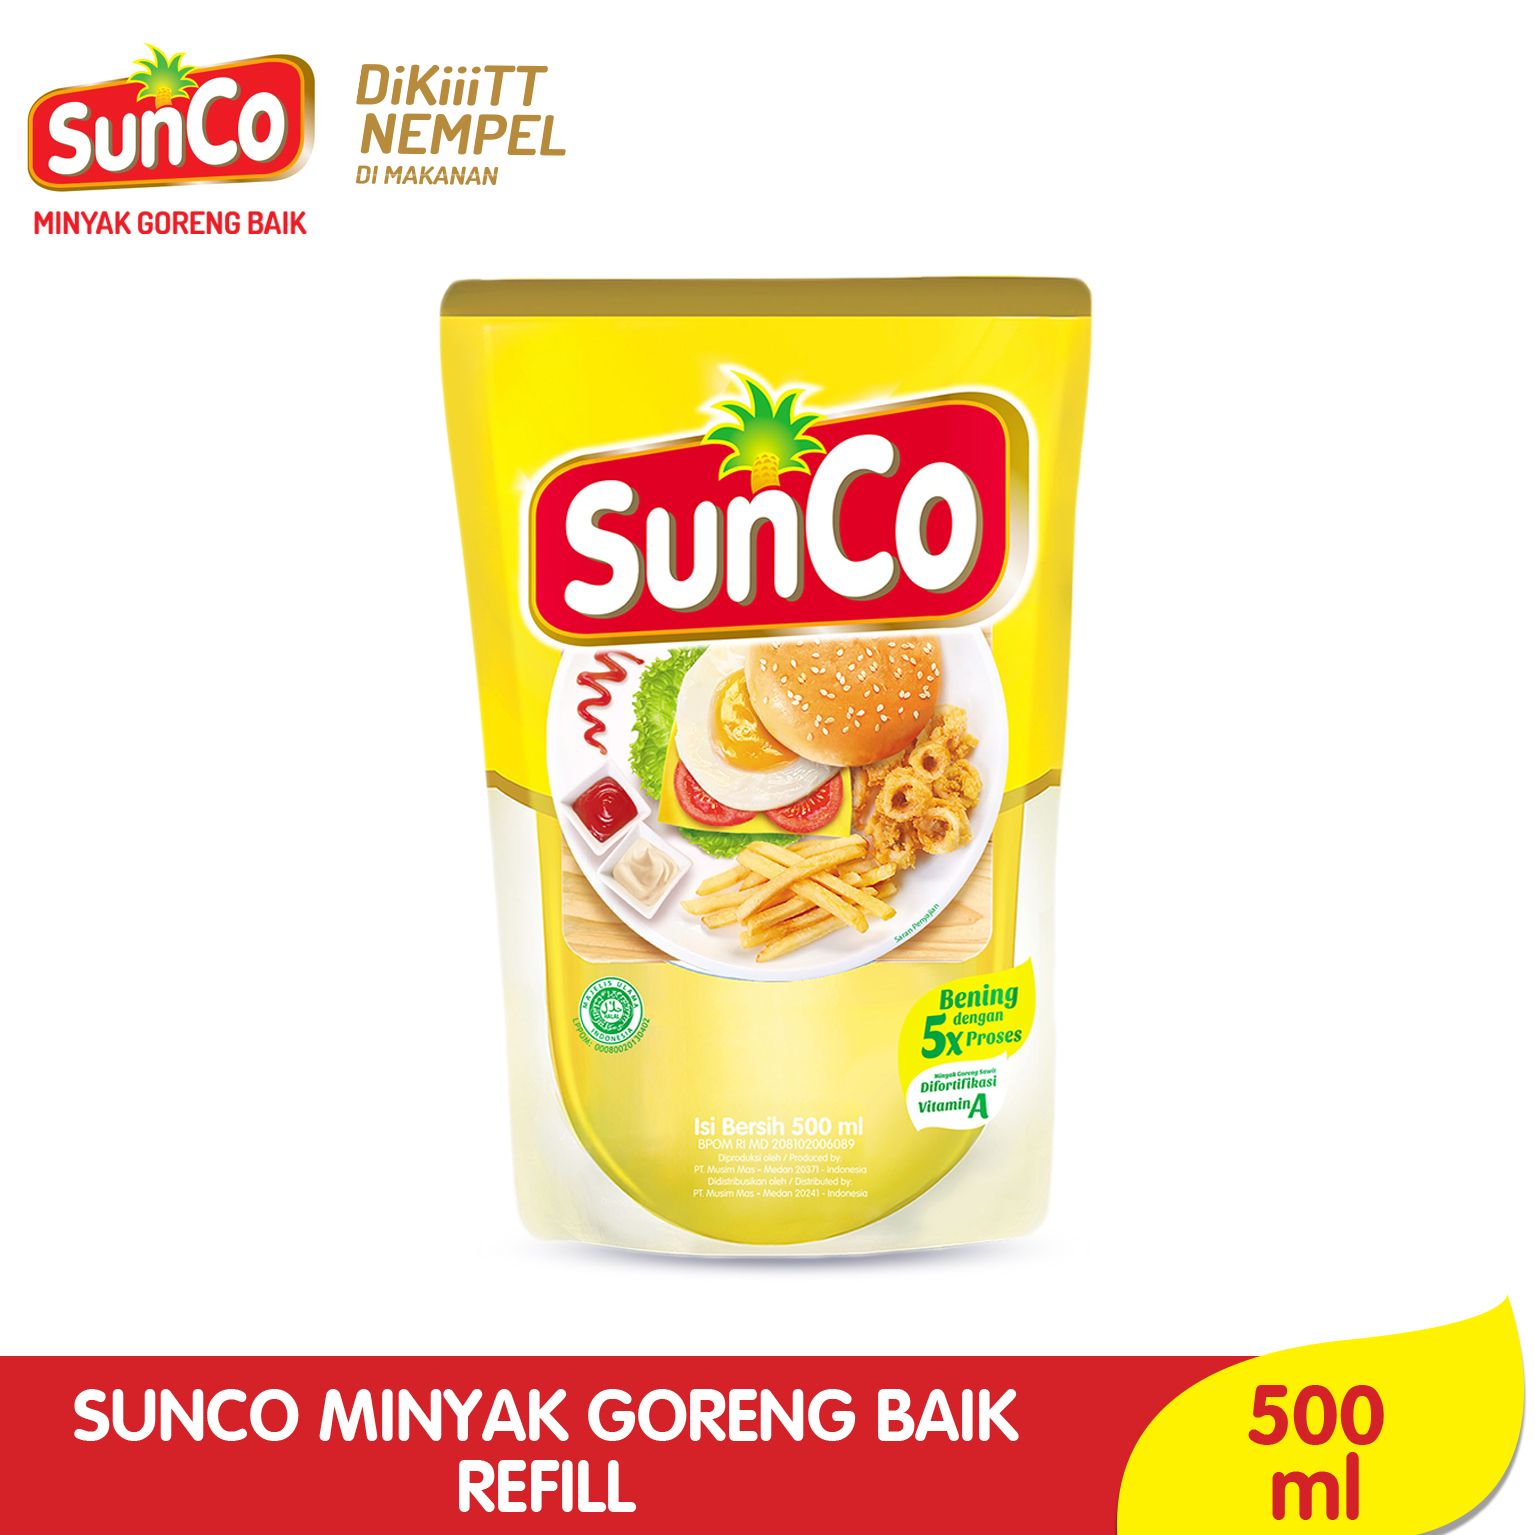 Sunco Minyak Goreng Refill 500ml - 1